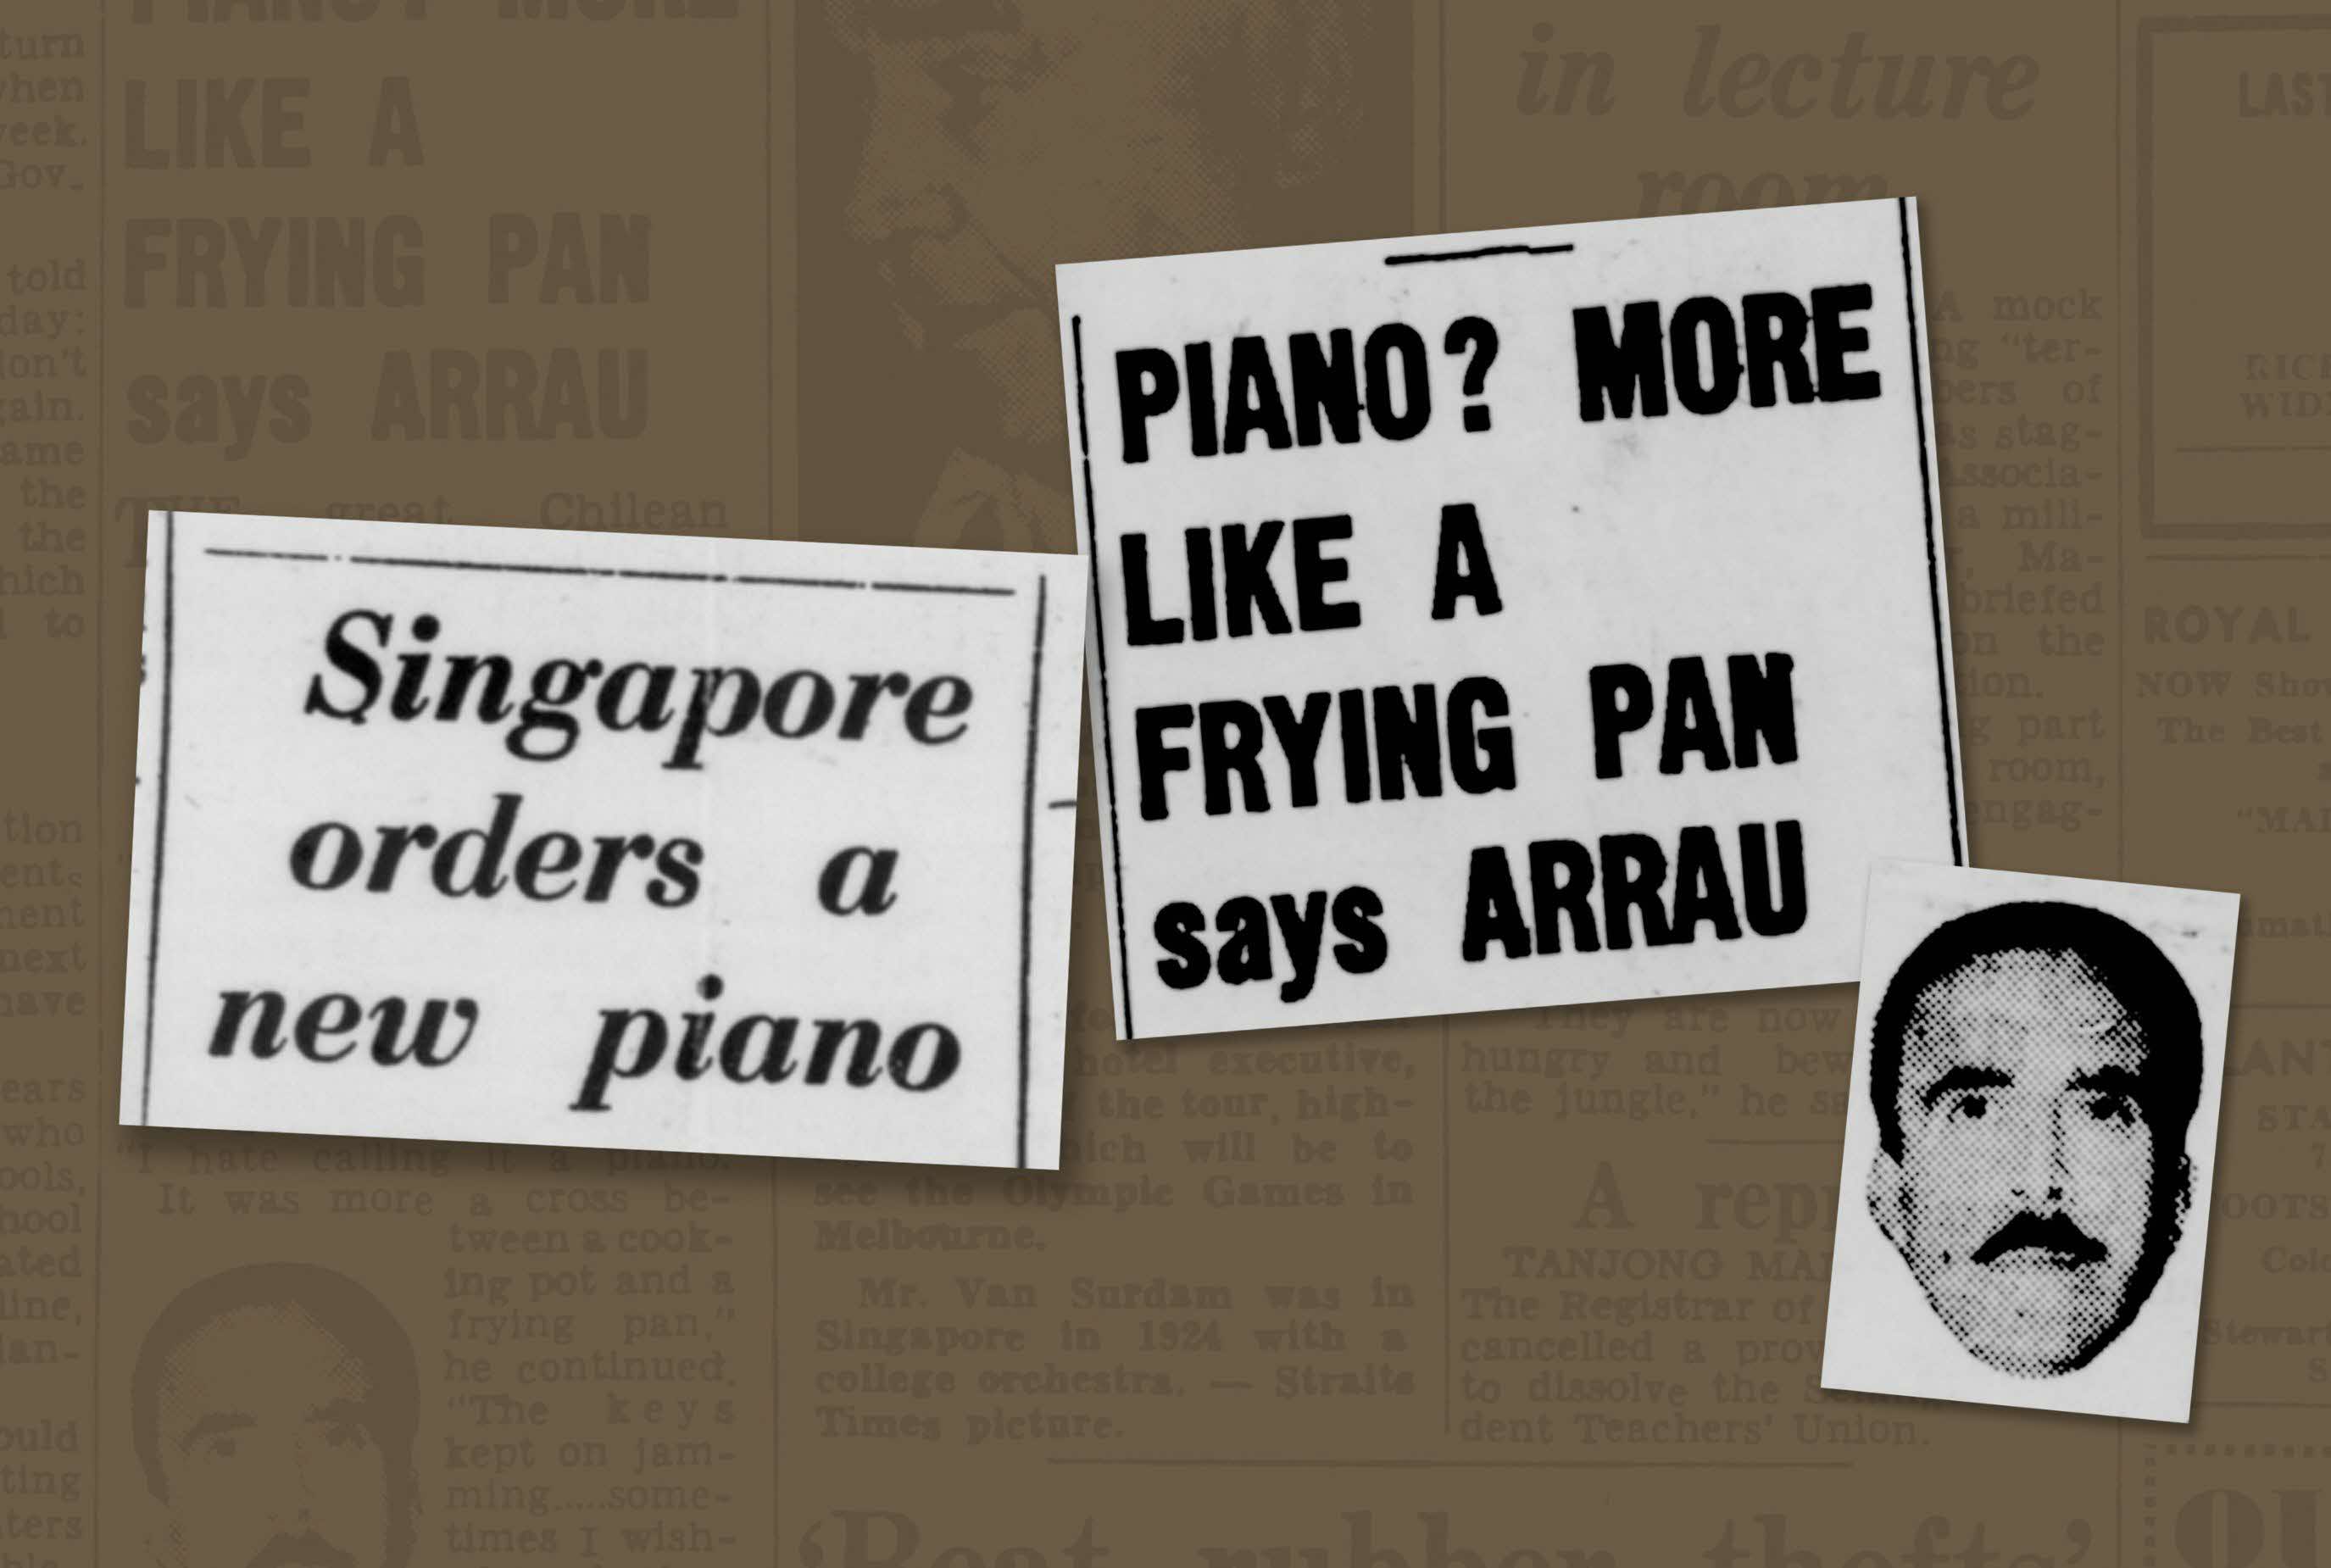 The Frying Pan Piano